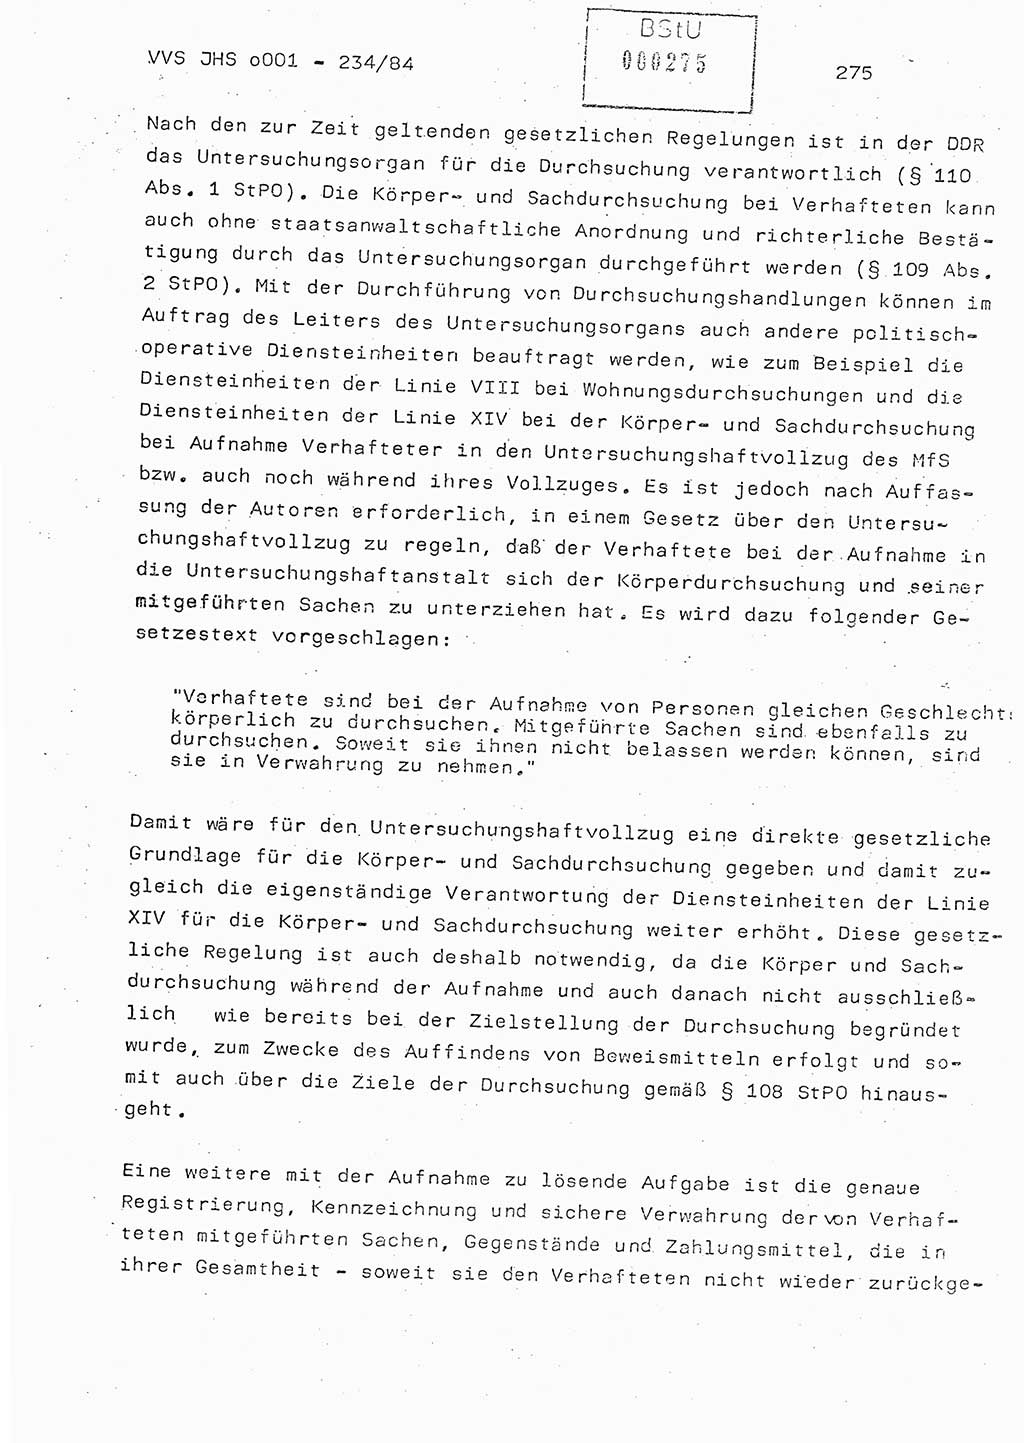 Dissertation Oberst Siegfried Rataizick (Abt. ⅩⅣ), Oberstleutnant Volkmar Heinz (Abt. ⅩⅣ), Oberstleutnant Werner Stein (HA Ⅸ), Hauptmann Heinz Conrad (JHS), Ministerium für Staatssicherheit (MfS) [Deutsche Demokratische Republik (DDR)], Juristische Hochschule (JHS), Vertrauliche Verschlußsache (VVS) o001-234/84, Potsdam 1984, Seite 275 (Diss. MfS DDR JHS VVS o001-234/84 1984, S. 275)